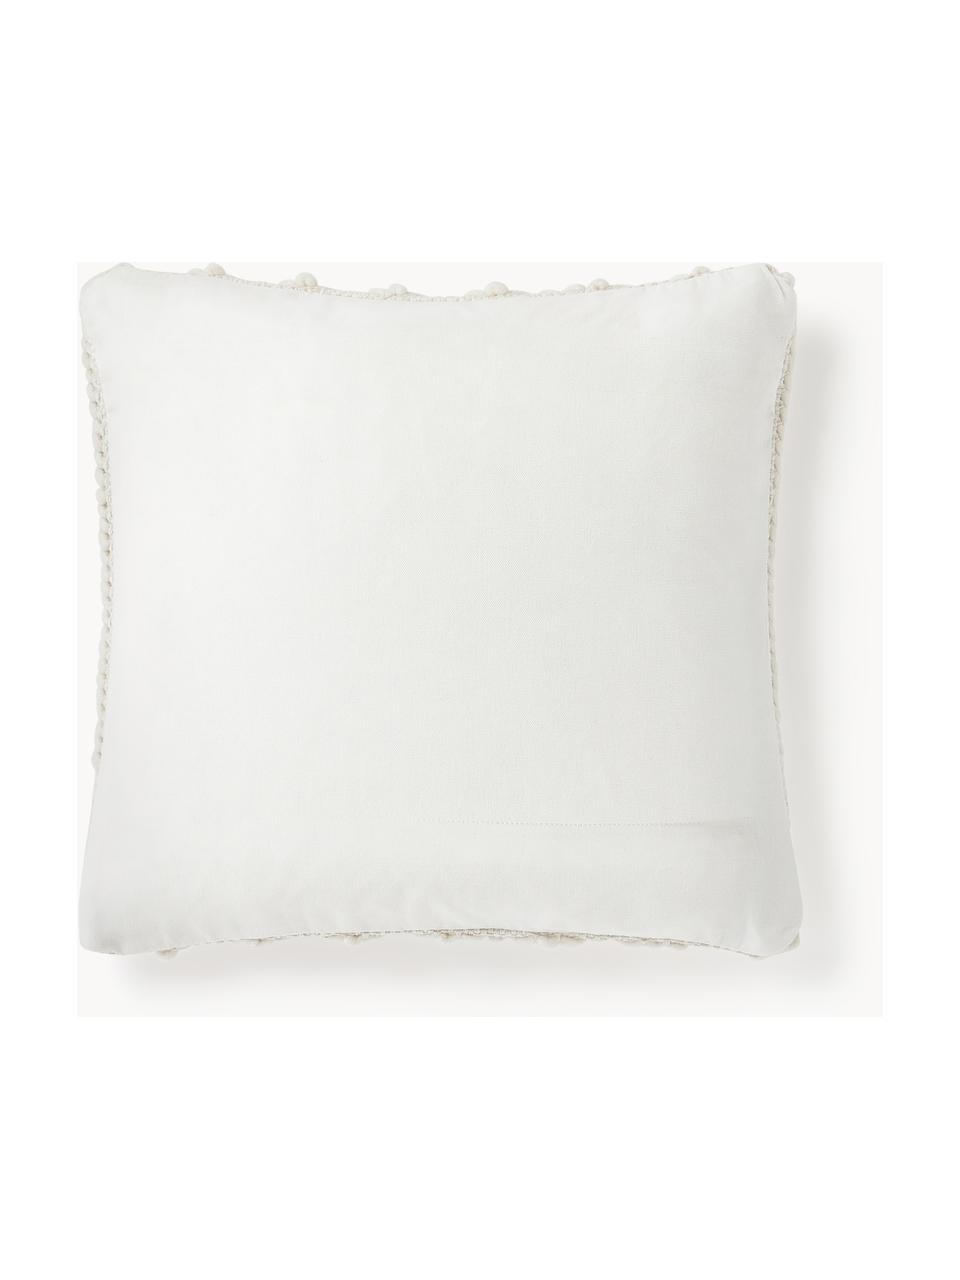 Copricuscino a maglia grossa Idra, Retro: 100% cotone, Bianco crema, Larg. 45 x Lung. 45 cm